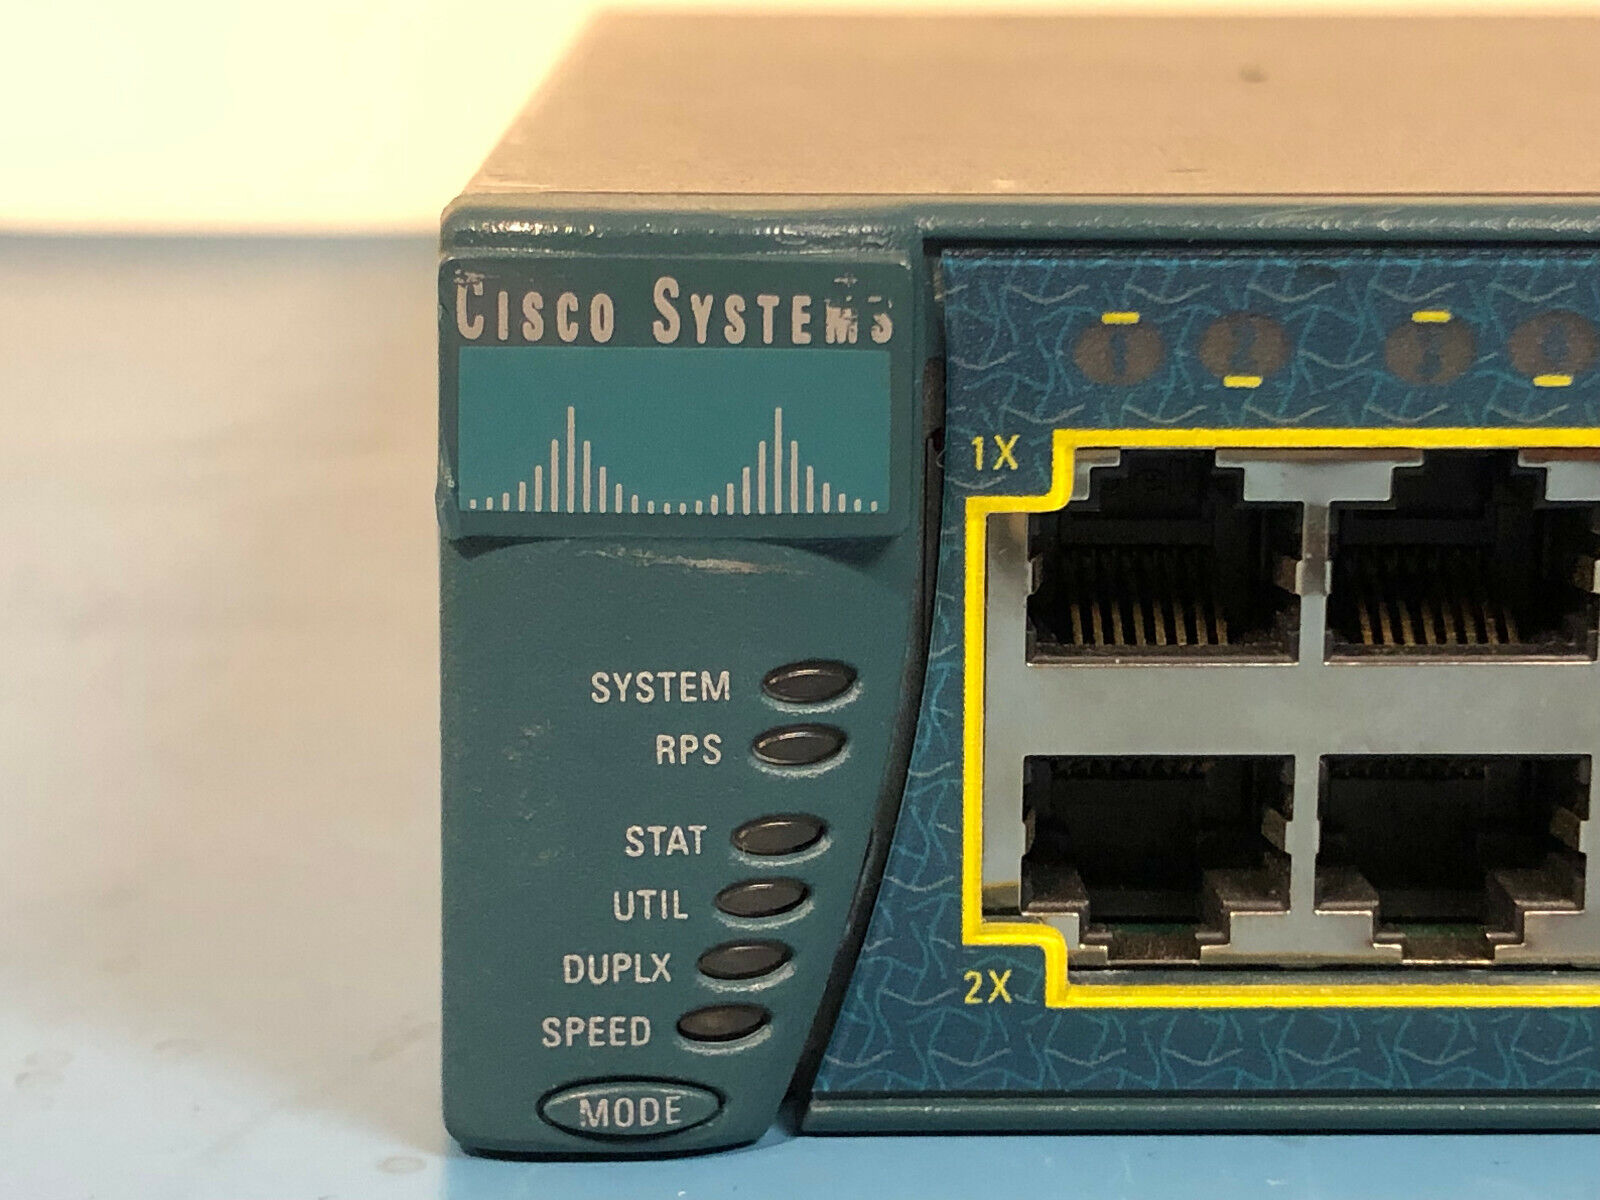 Cisco Catalyst 3550 WS-C3550-48-SMI Ethernet Switch 48x 10/100 RJ45 2x 1Gb GBIC.